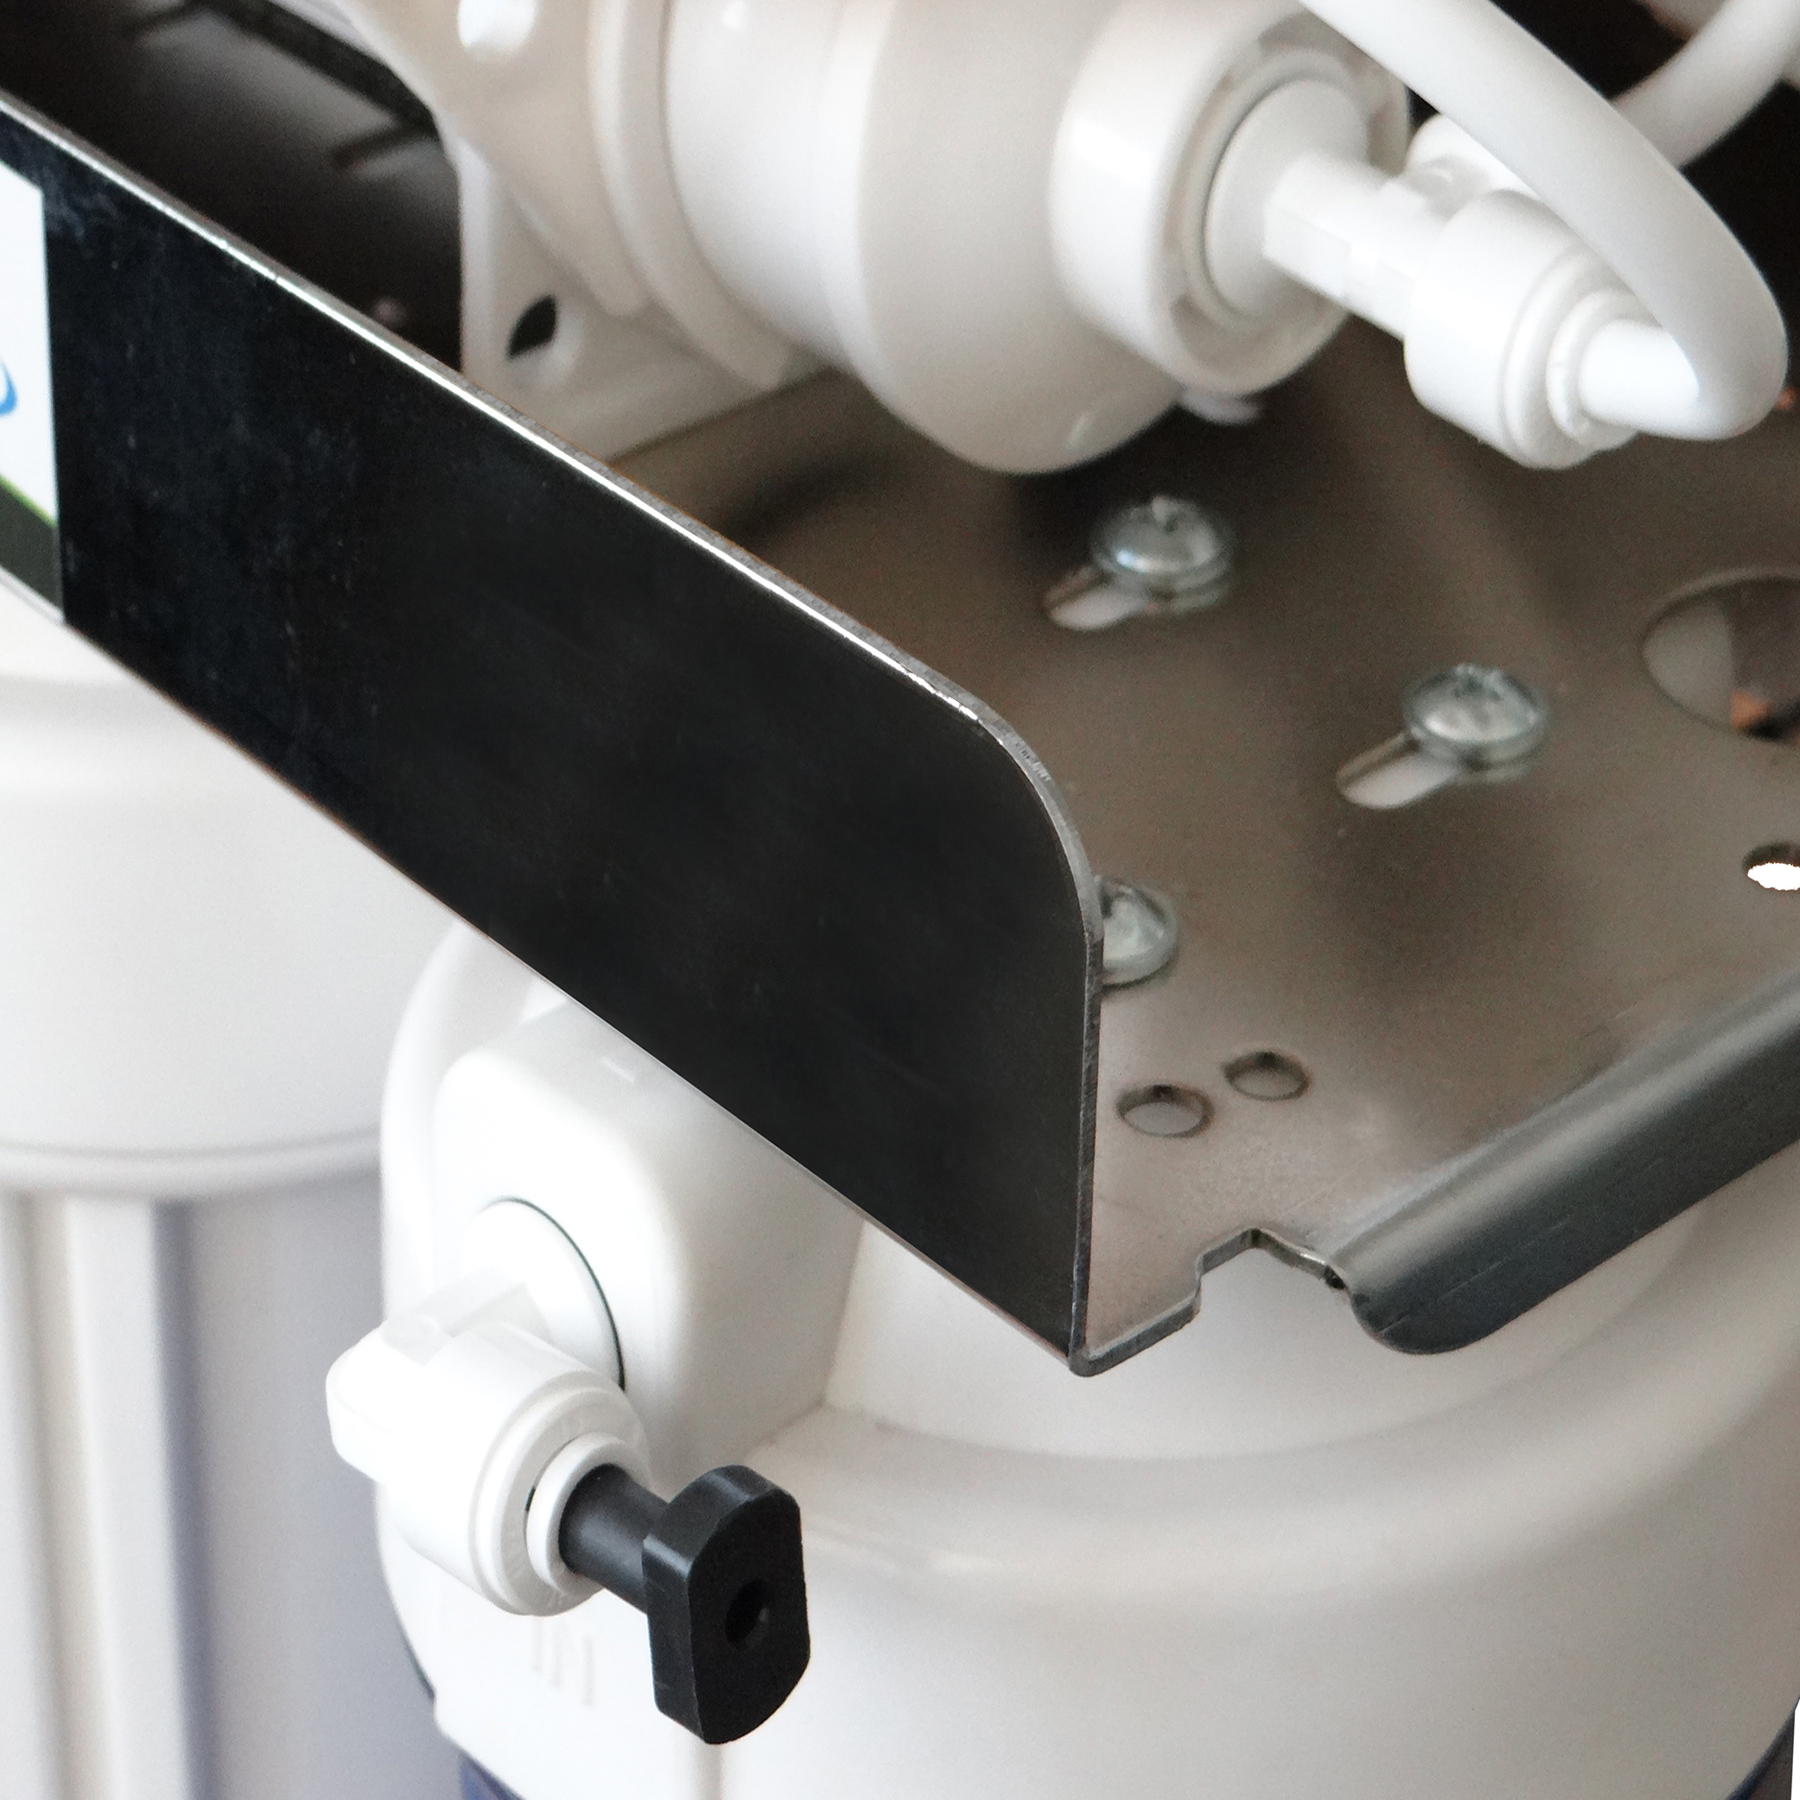  دستگاه تصفیه کننده آب آکوآ اسپرینگ مدل CHROME-FSX10